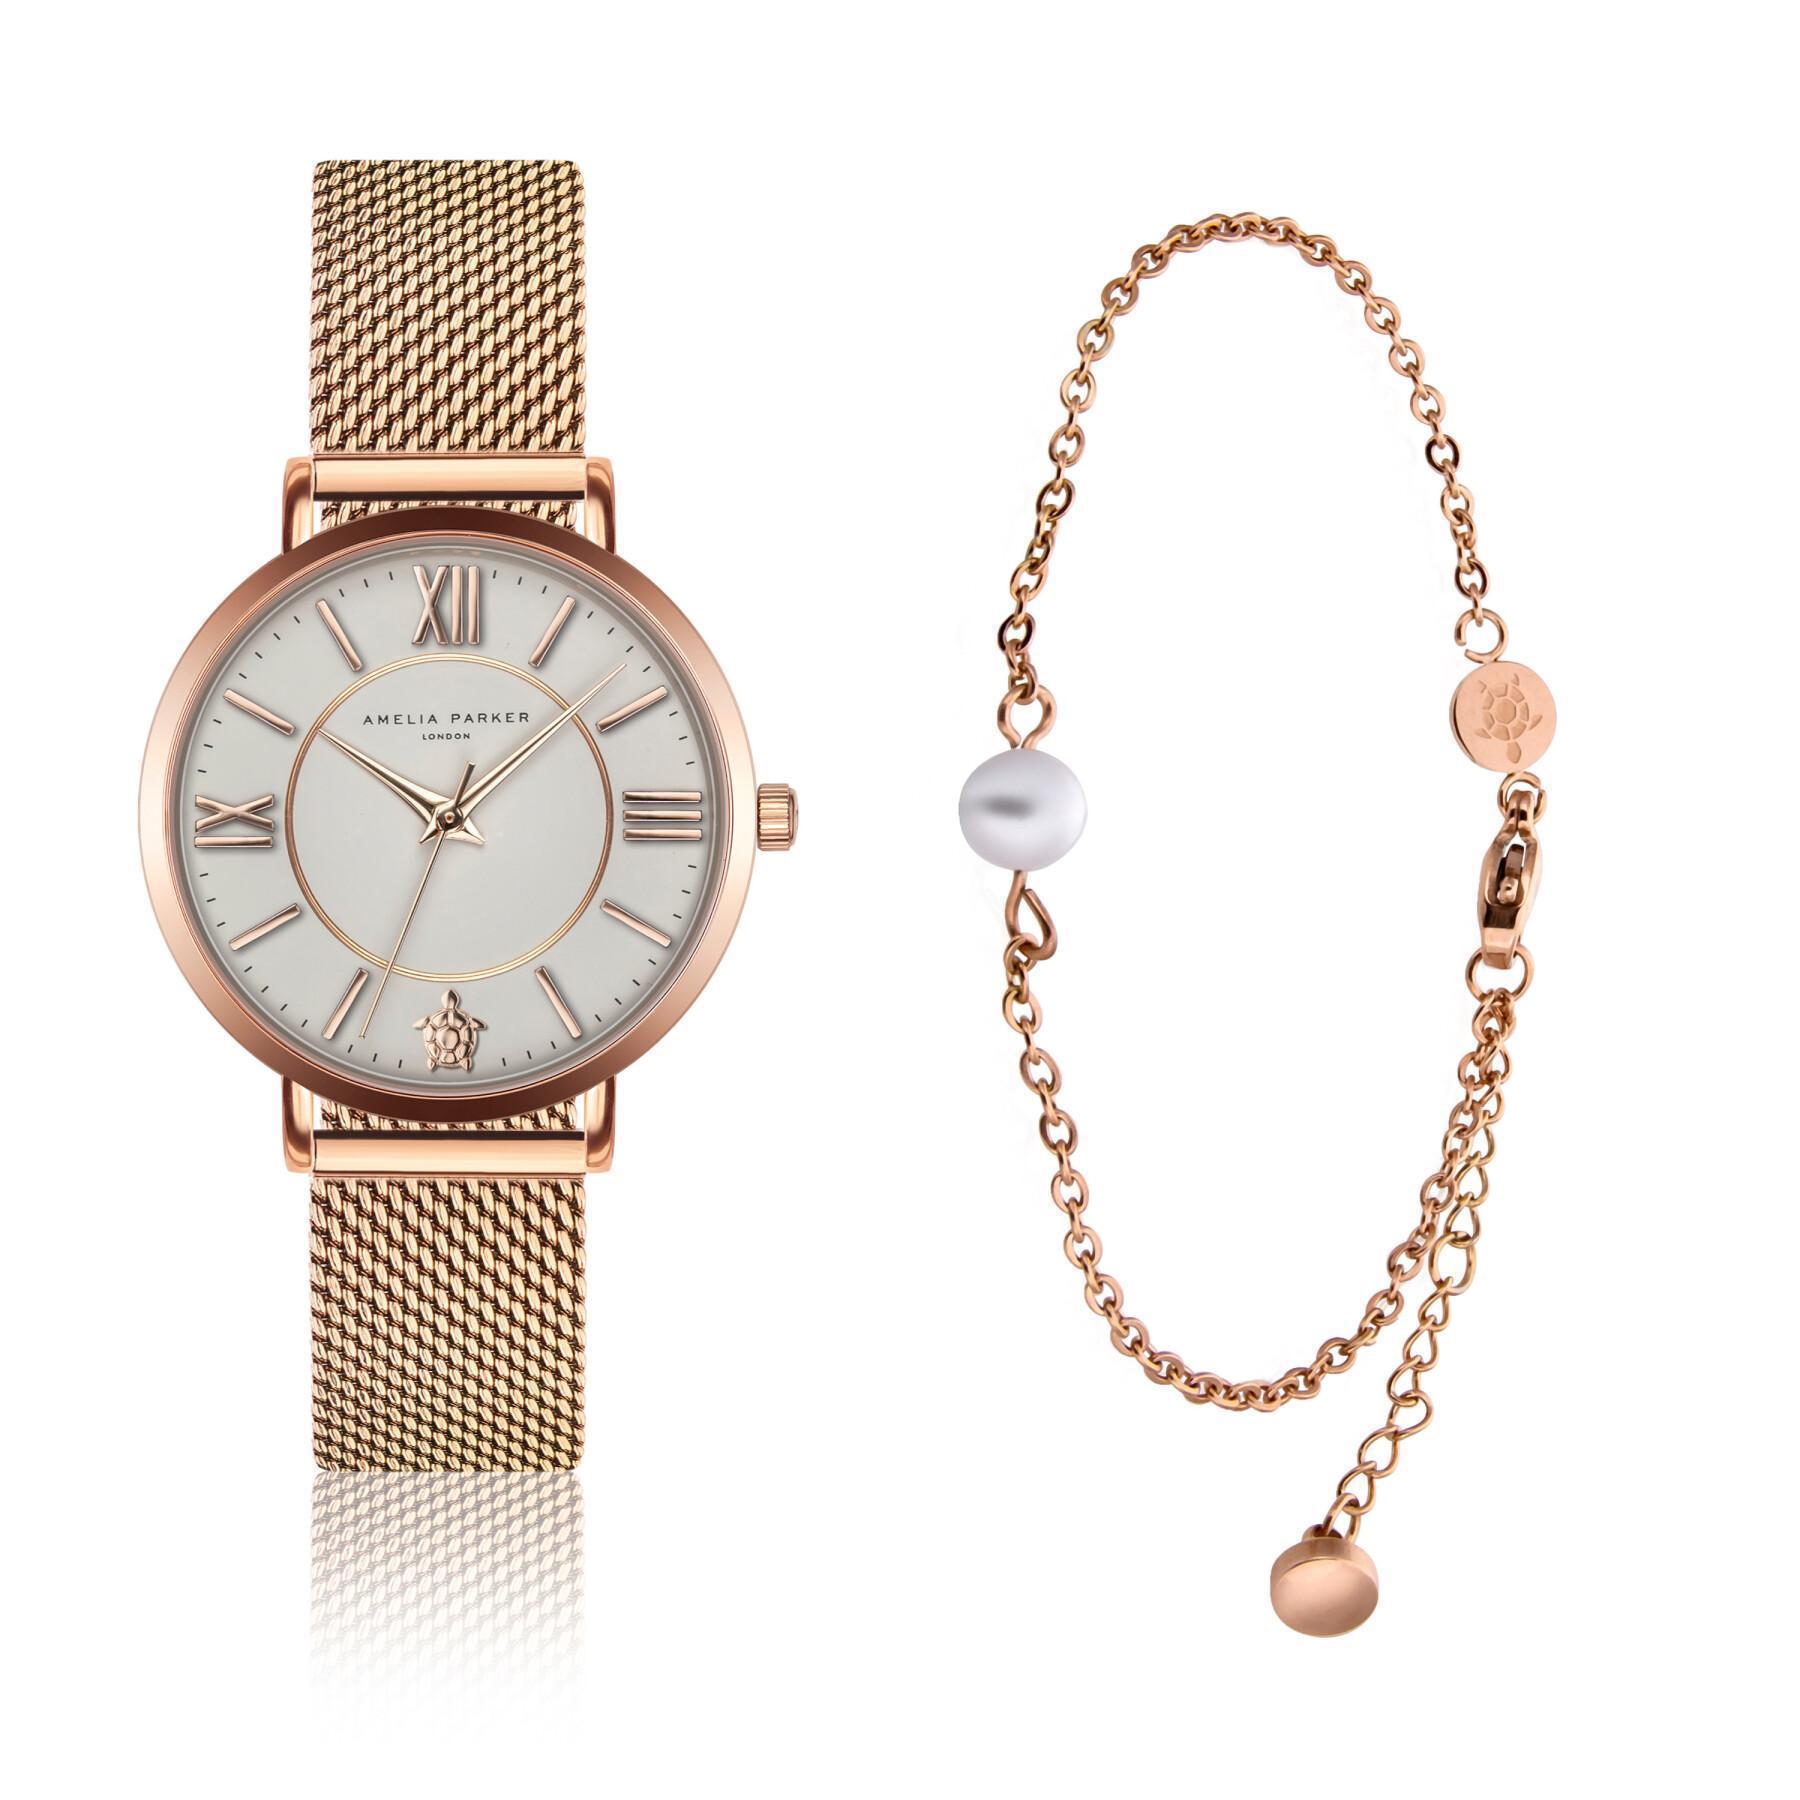 Reloj y pulsera de mujer Amelia Parker Petite Classique